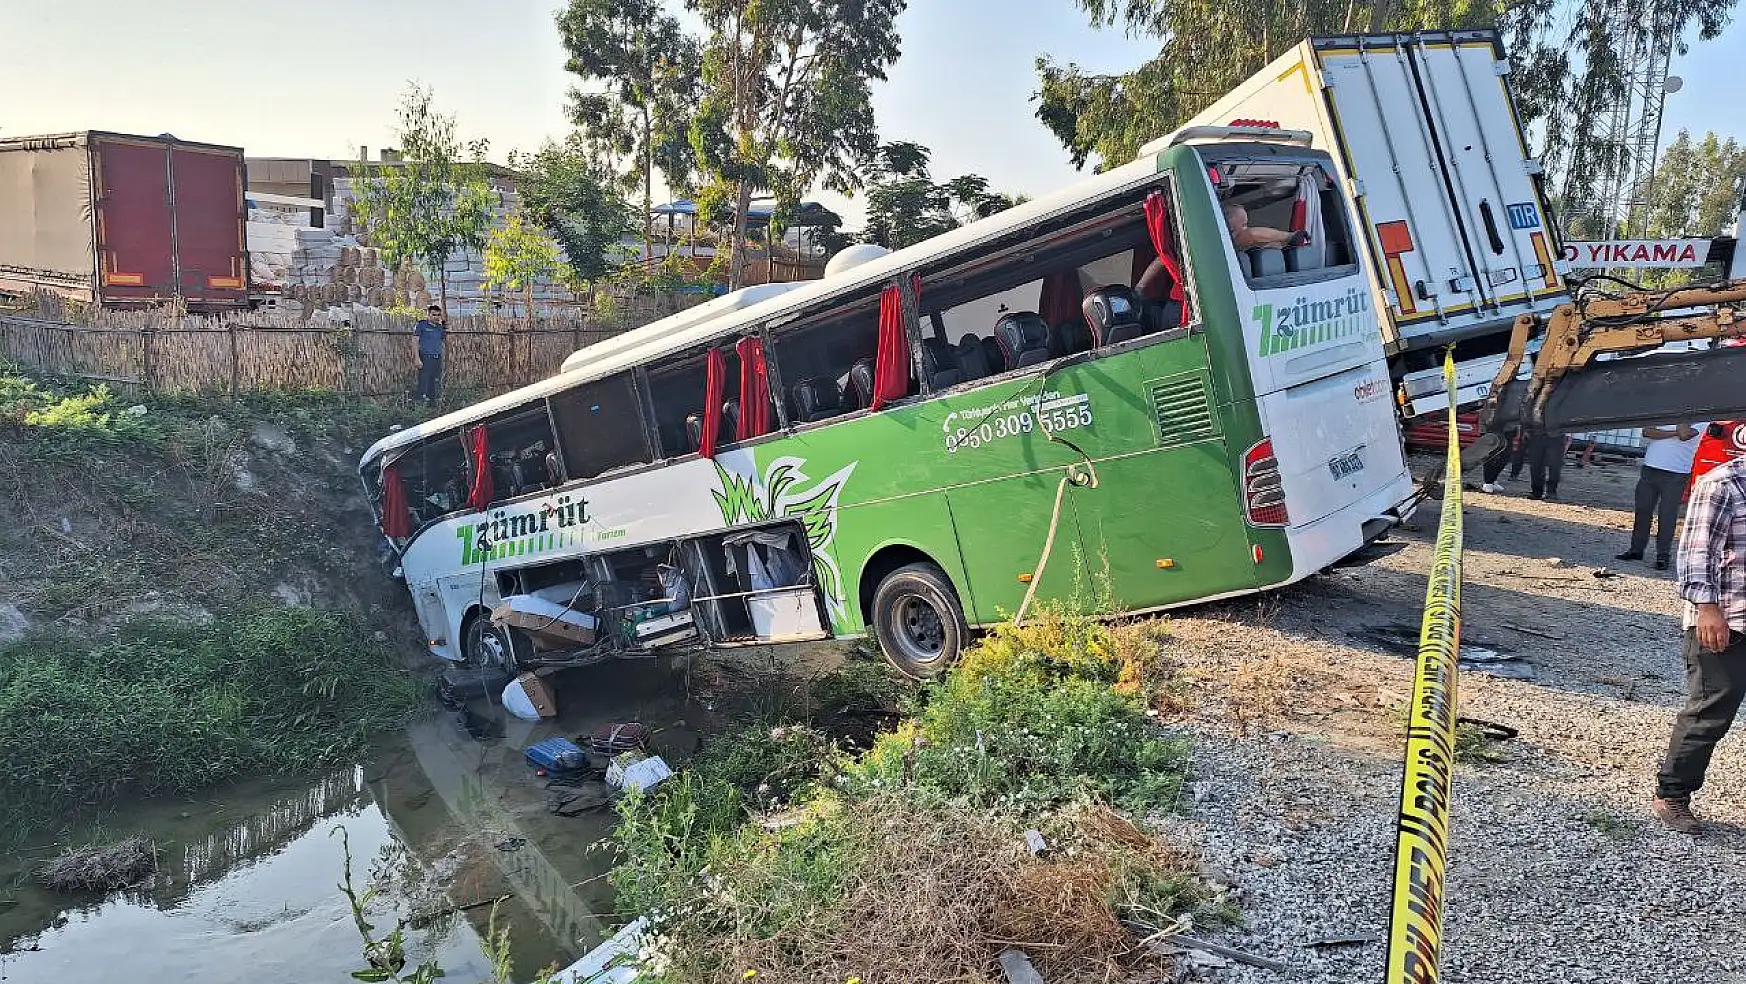 Son Dakika! Yolcu otobüsü kamyonla çarpıştı! 1 kişi ölü 28 yaralı